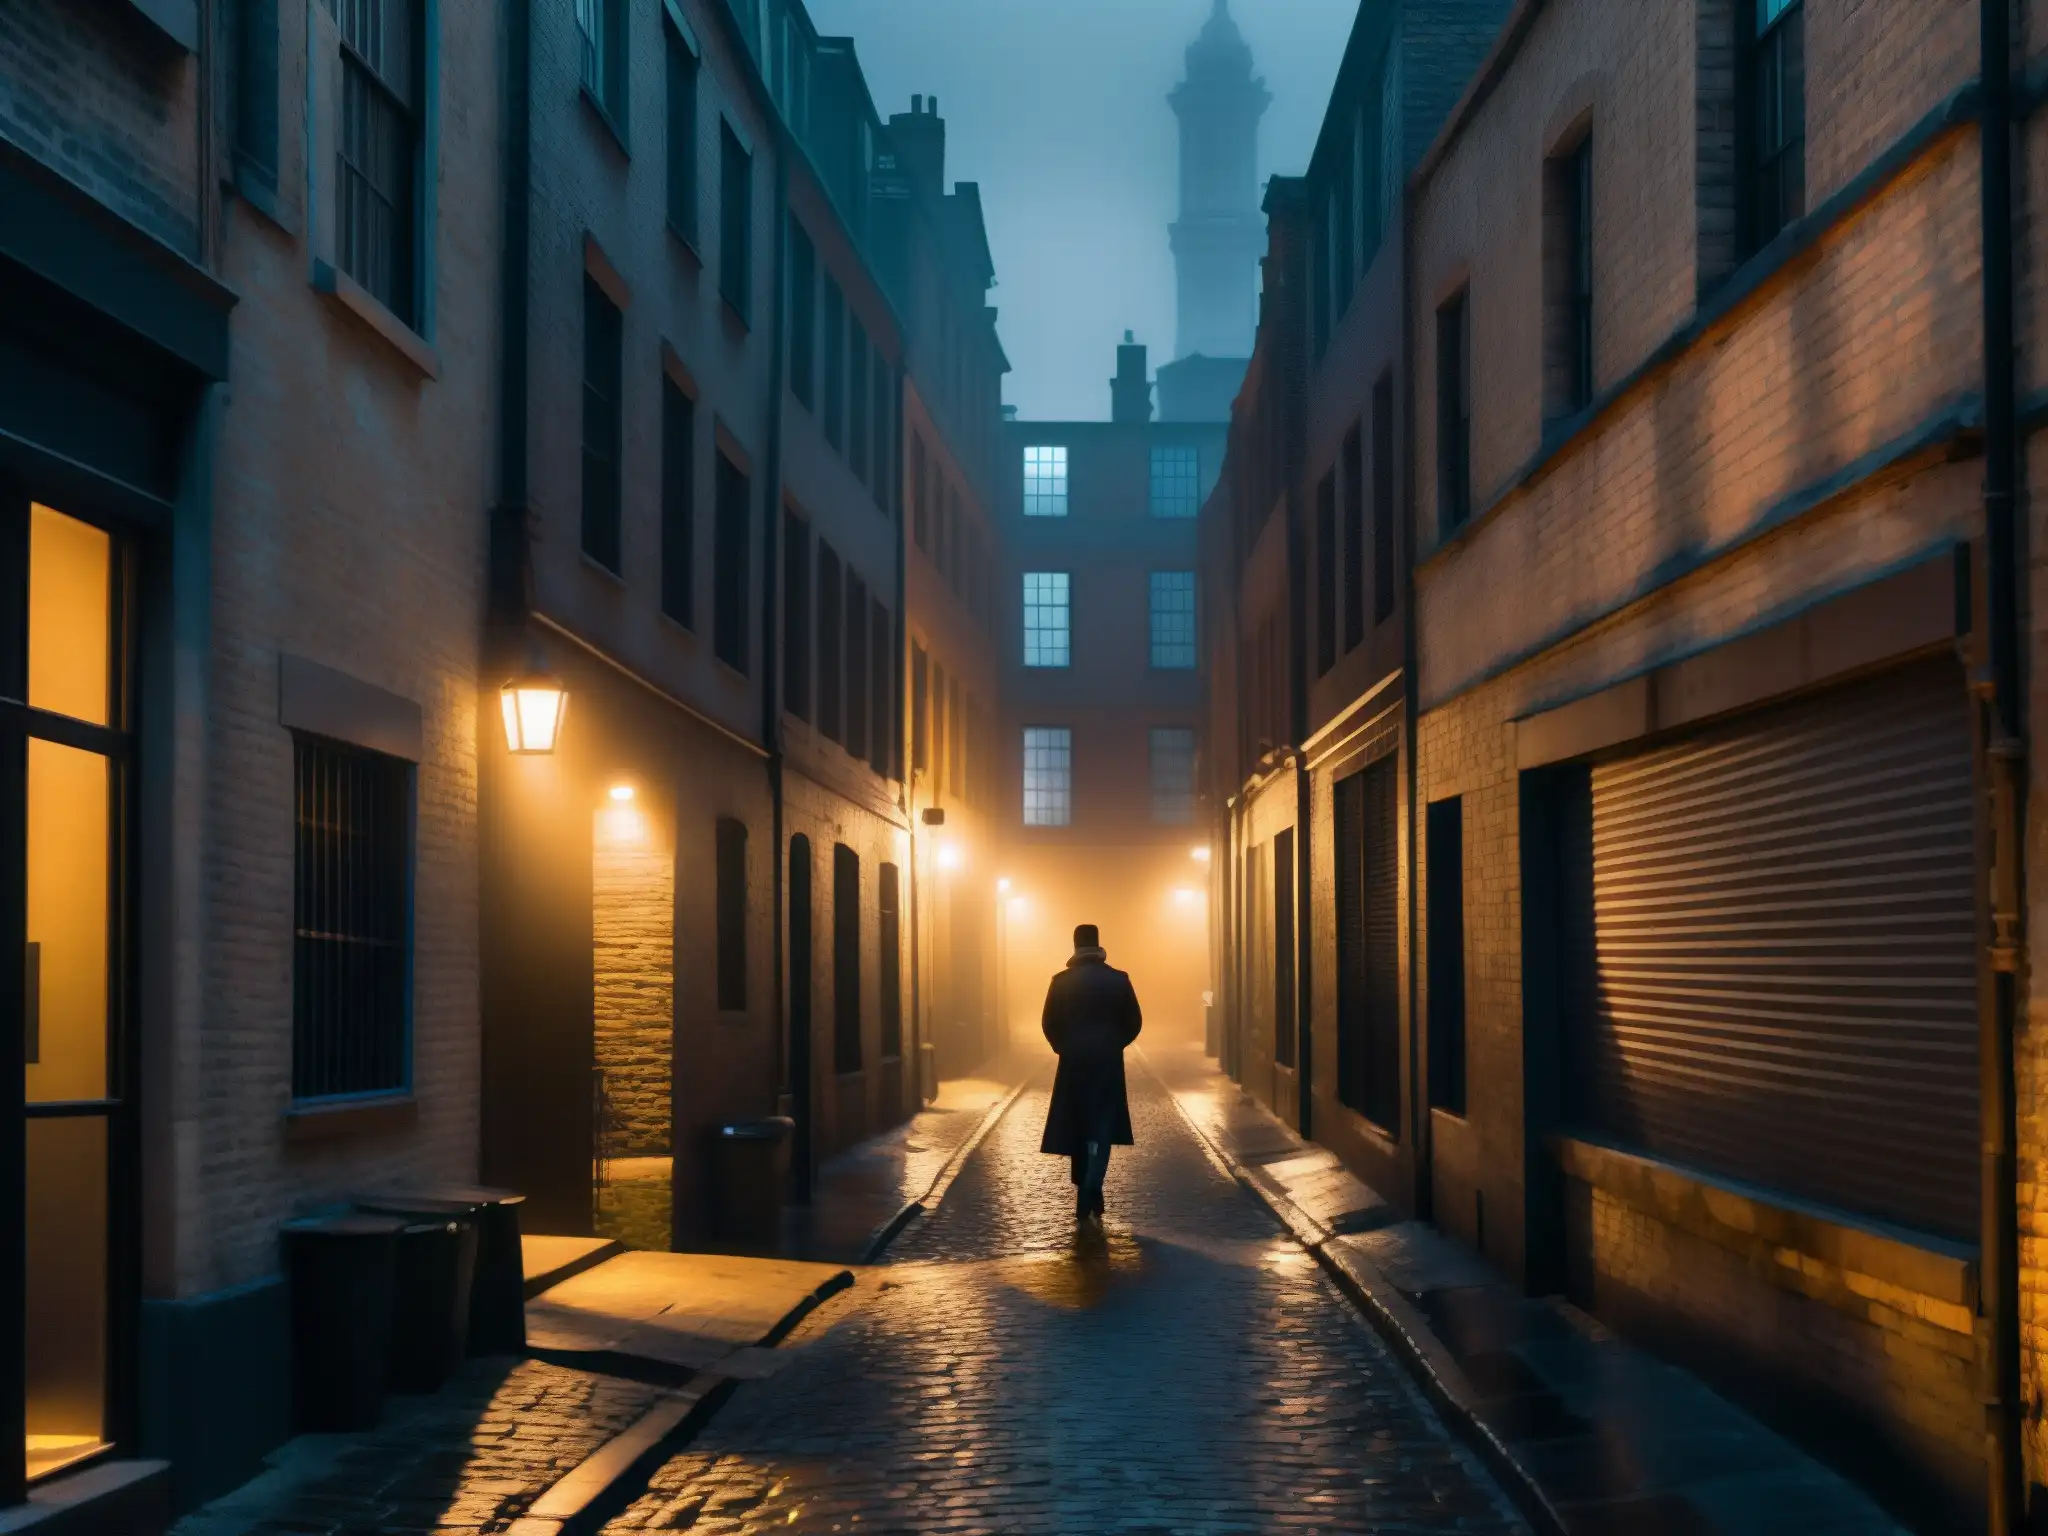 Un callejón sombrío y misterioso en la ciudad, envuelto en neblina y con un personaje solitario